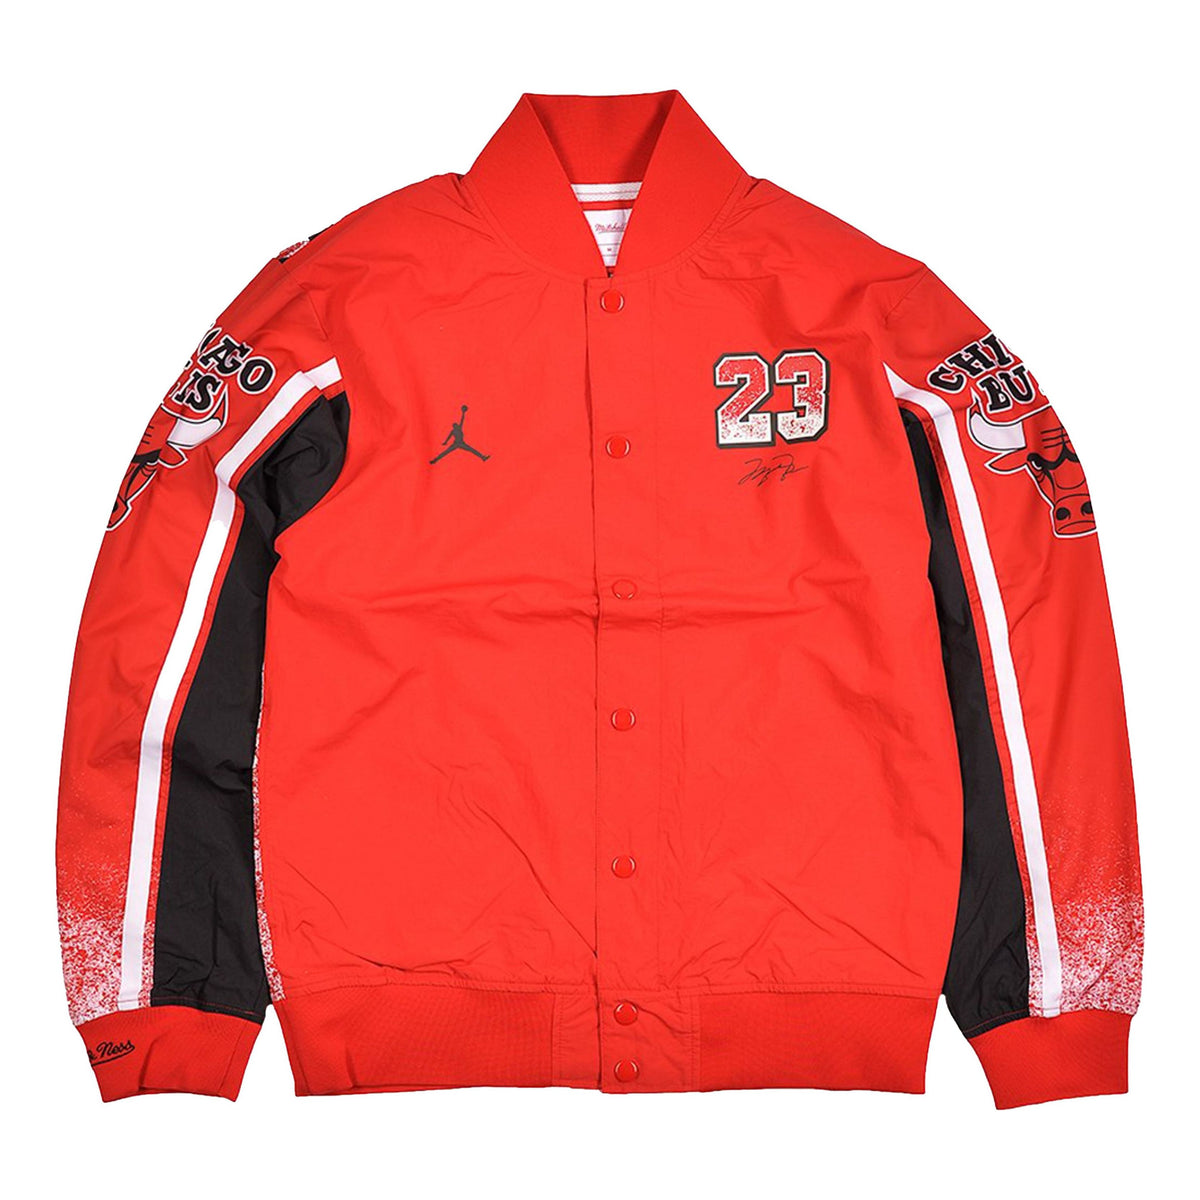 Air Jordan x Mitchell & Ness 1988 All Star Warm Up Jacket CW0884-657